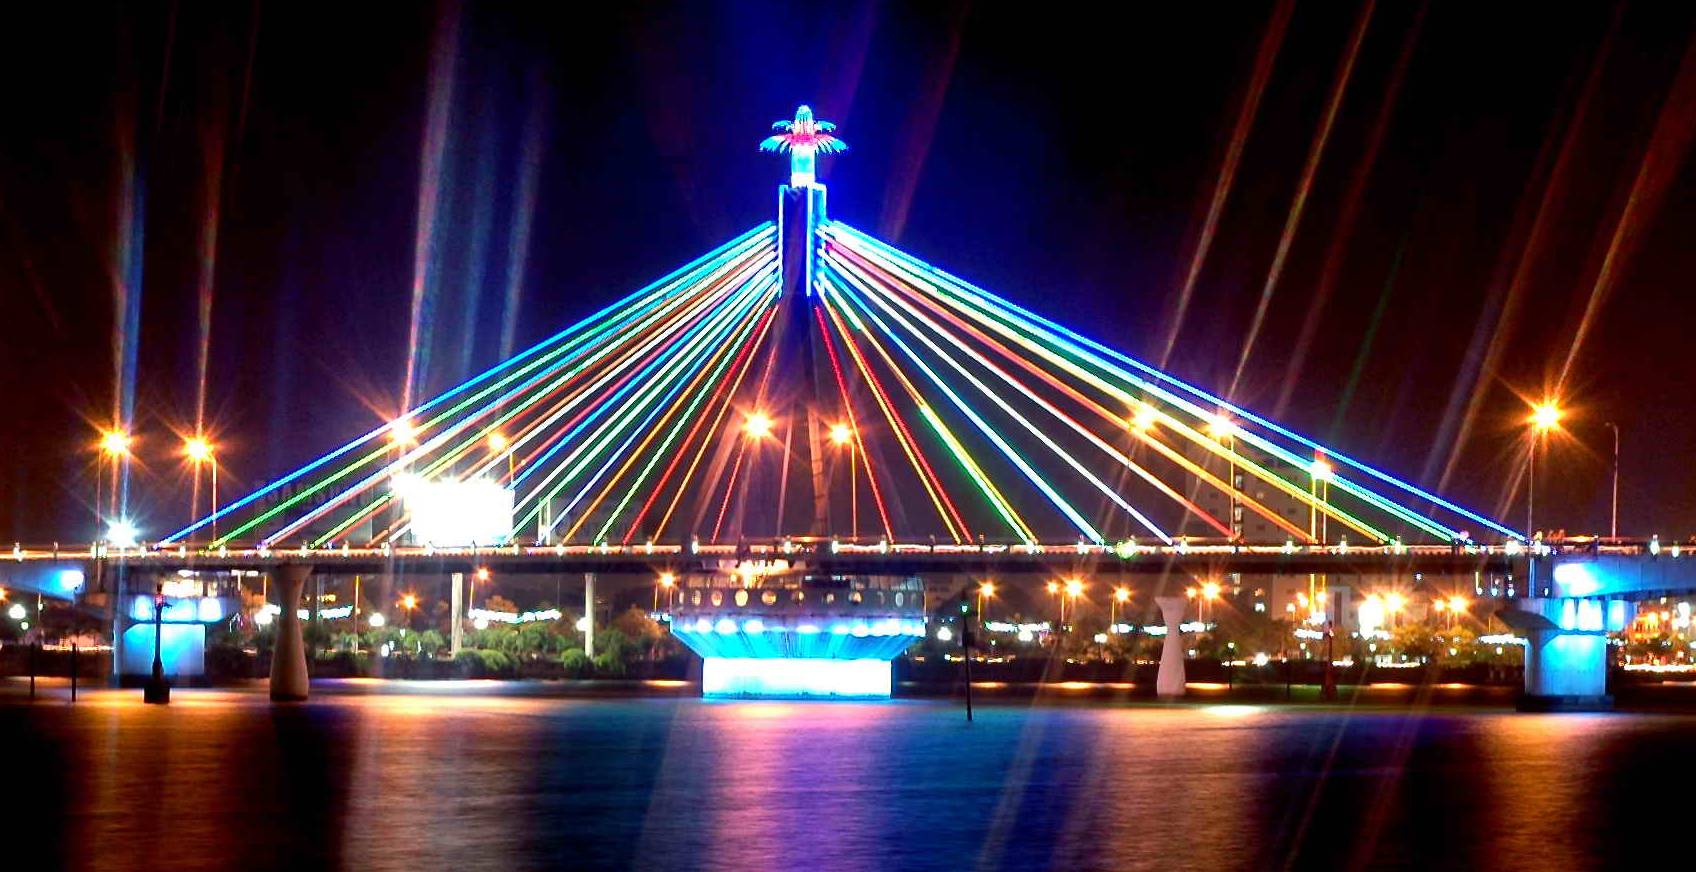 Cầu sông Hàn là cây cầu đầu tiên do chính người Việt làm ra do đó mang đến niềm tự hào to lớn cho người dân Đà thành